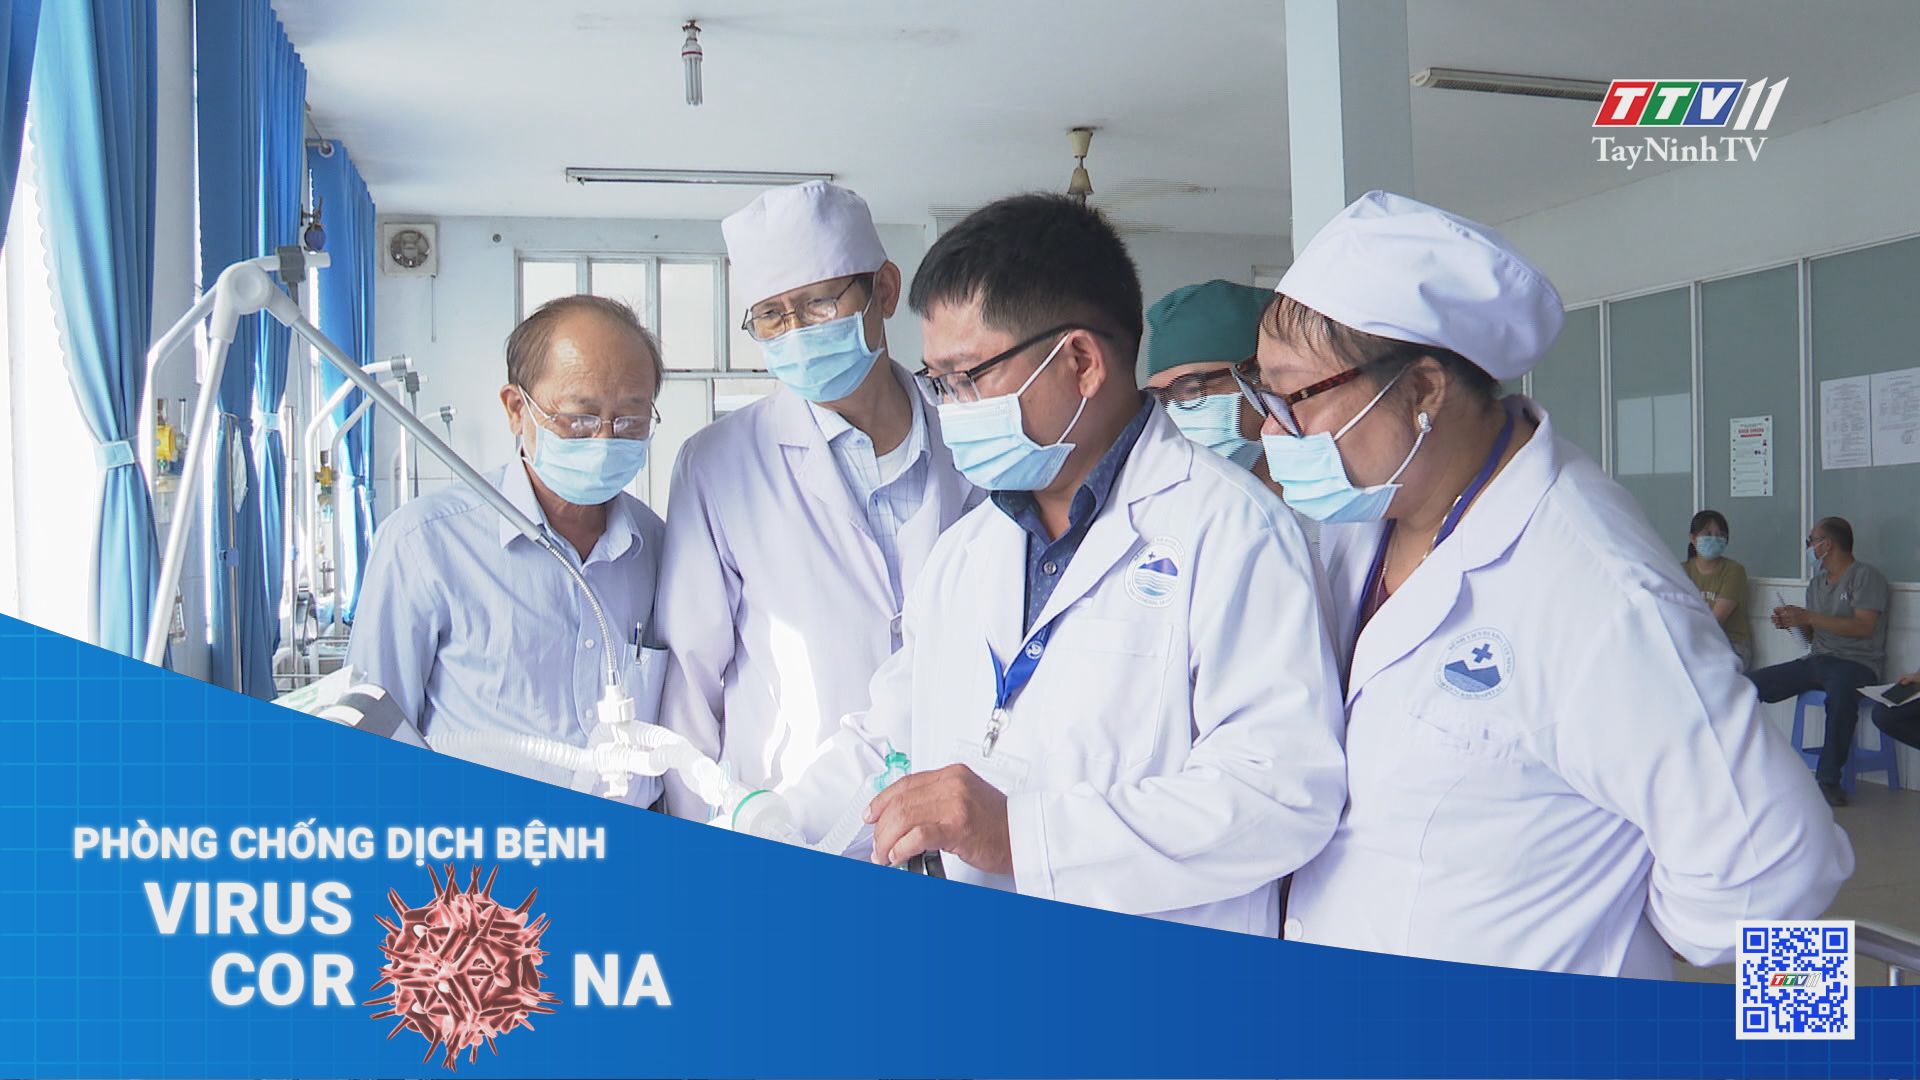 Hoàn tất tiêm chủng vaccine phòng Covid-19 đợt 1 tại Tây Ninh | THÔNG TIN DỊCH CÚM COVID-19 | TayNinhTV